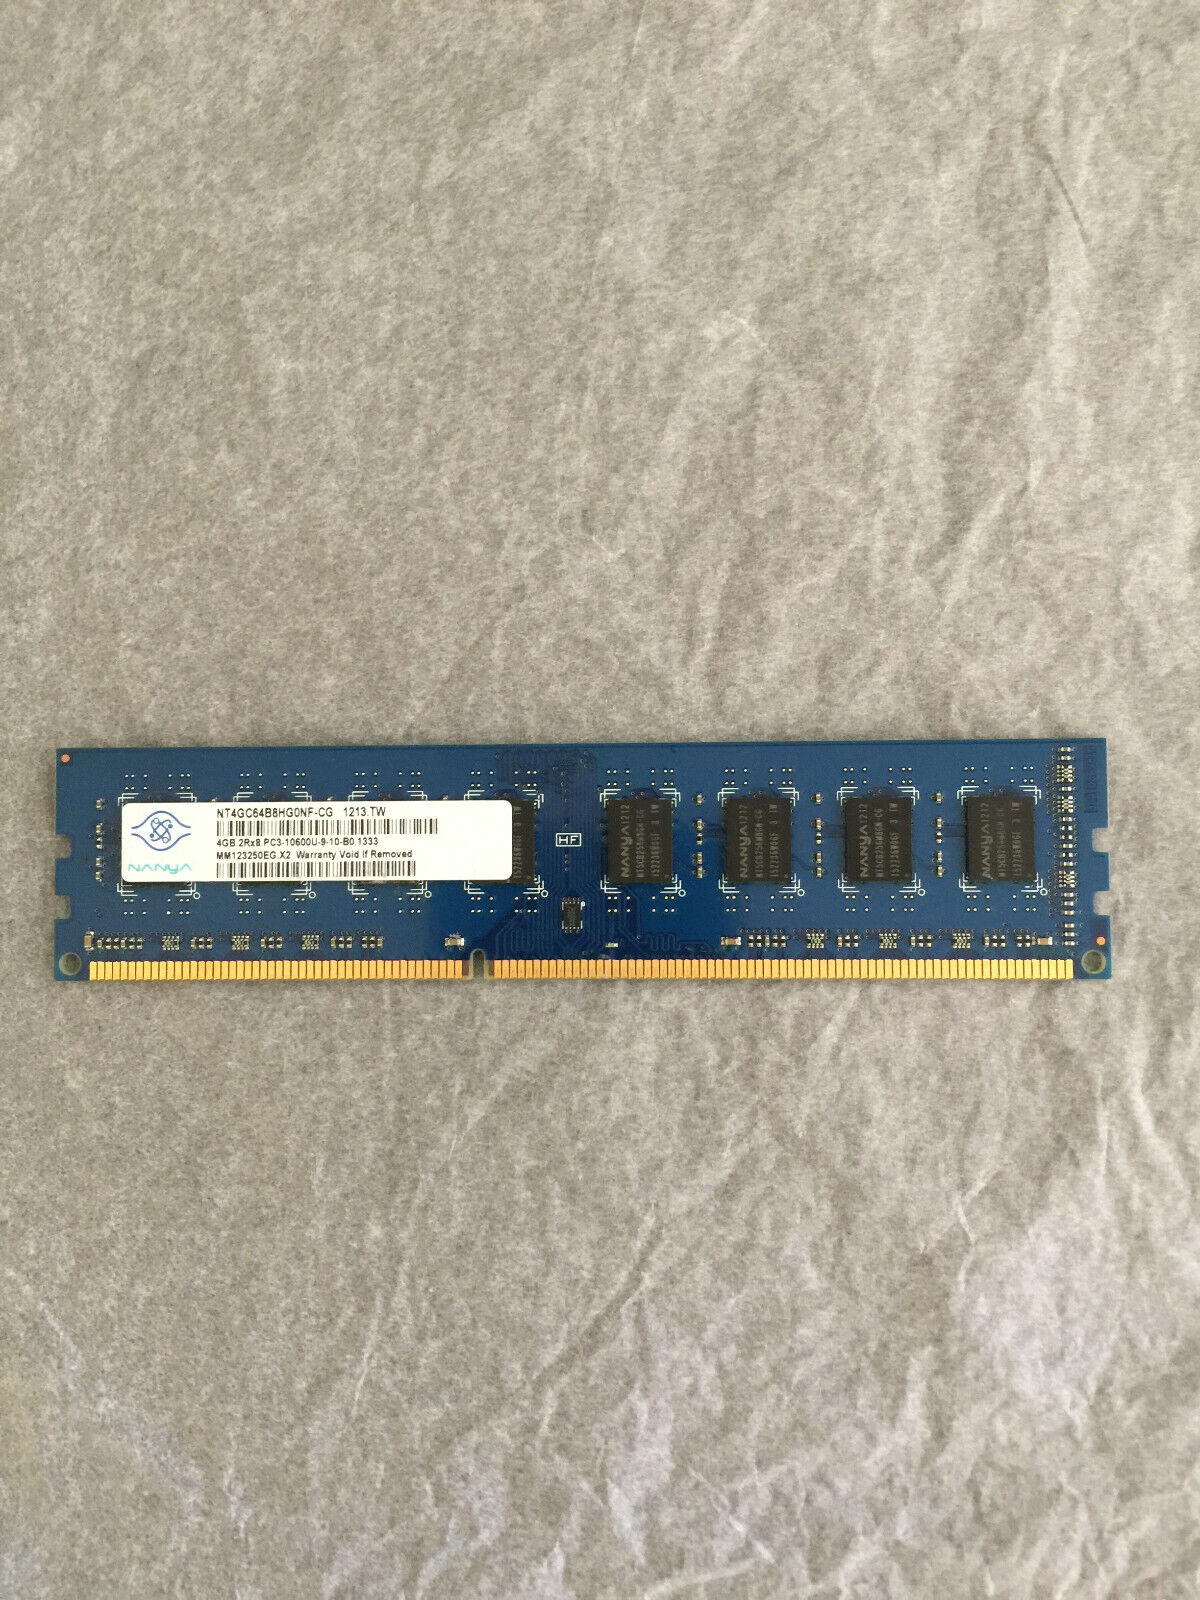 Nanya NT4GC64B8HG0NF-CG - 4GB 1333Mhz PC3-10600U DDR3-1333 Desktop Memory Ram